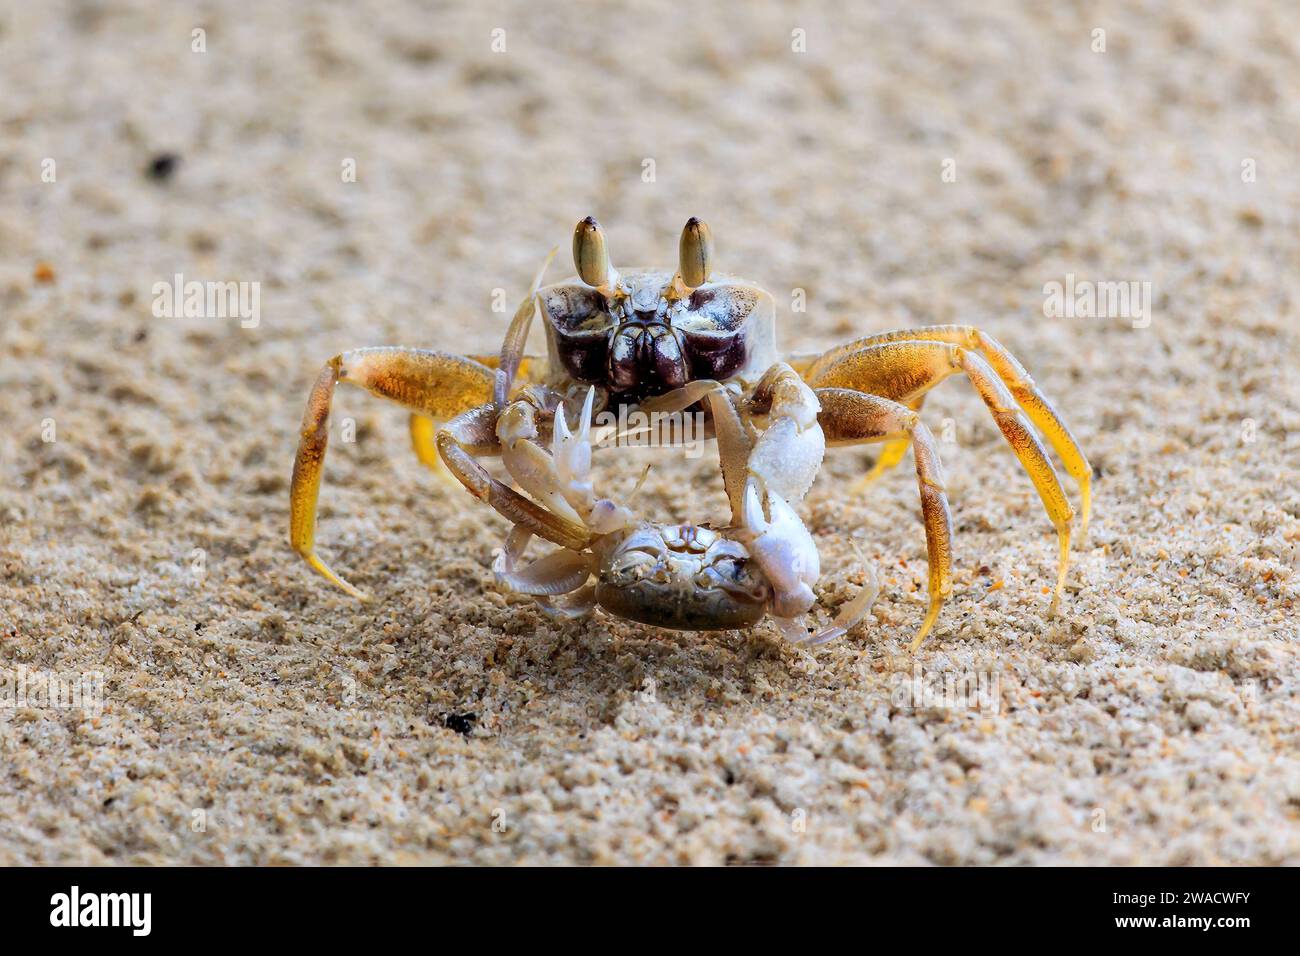 Zwei Krabben kämpfen am Strand, Insel koh Phi Phi, Thailand. Größere Krabbe hält kleinere Krabben unten. Stockfoto